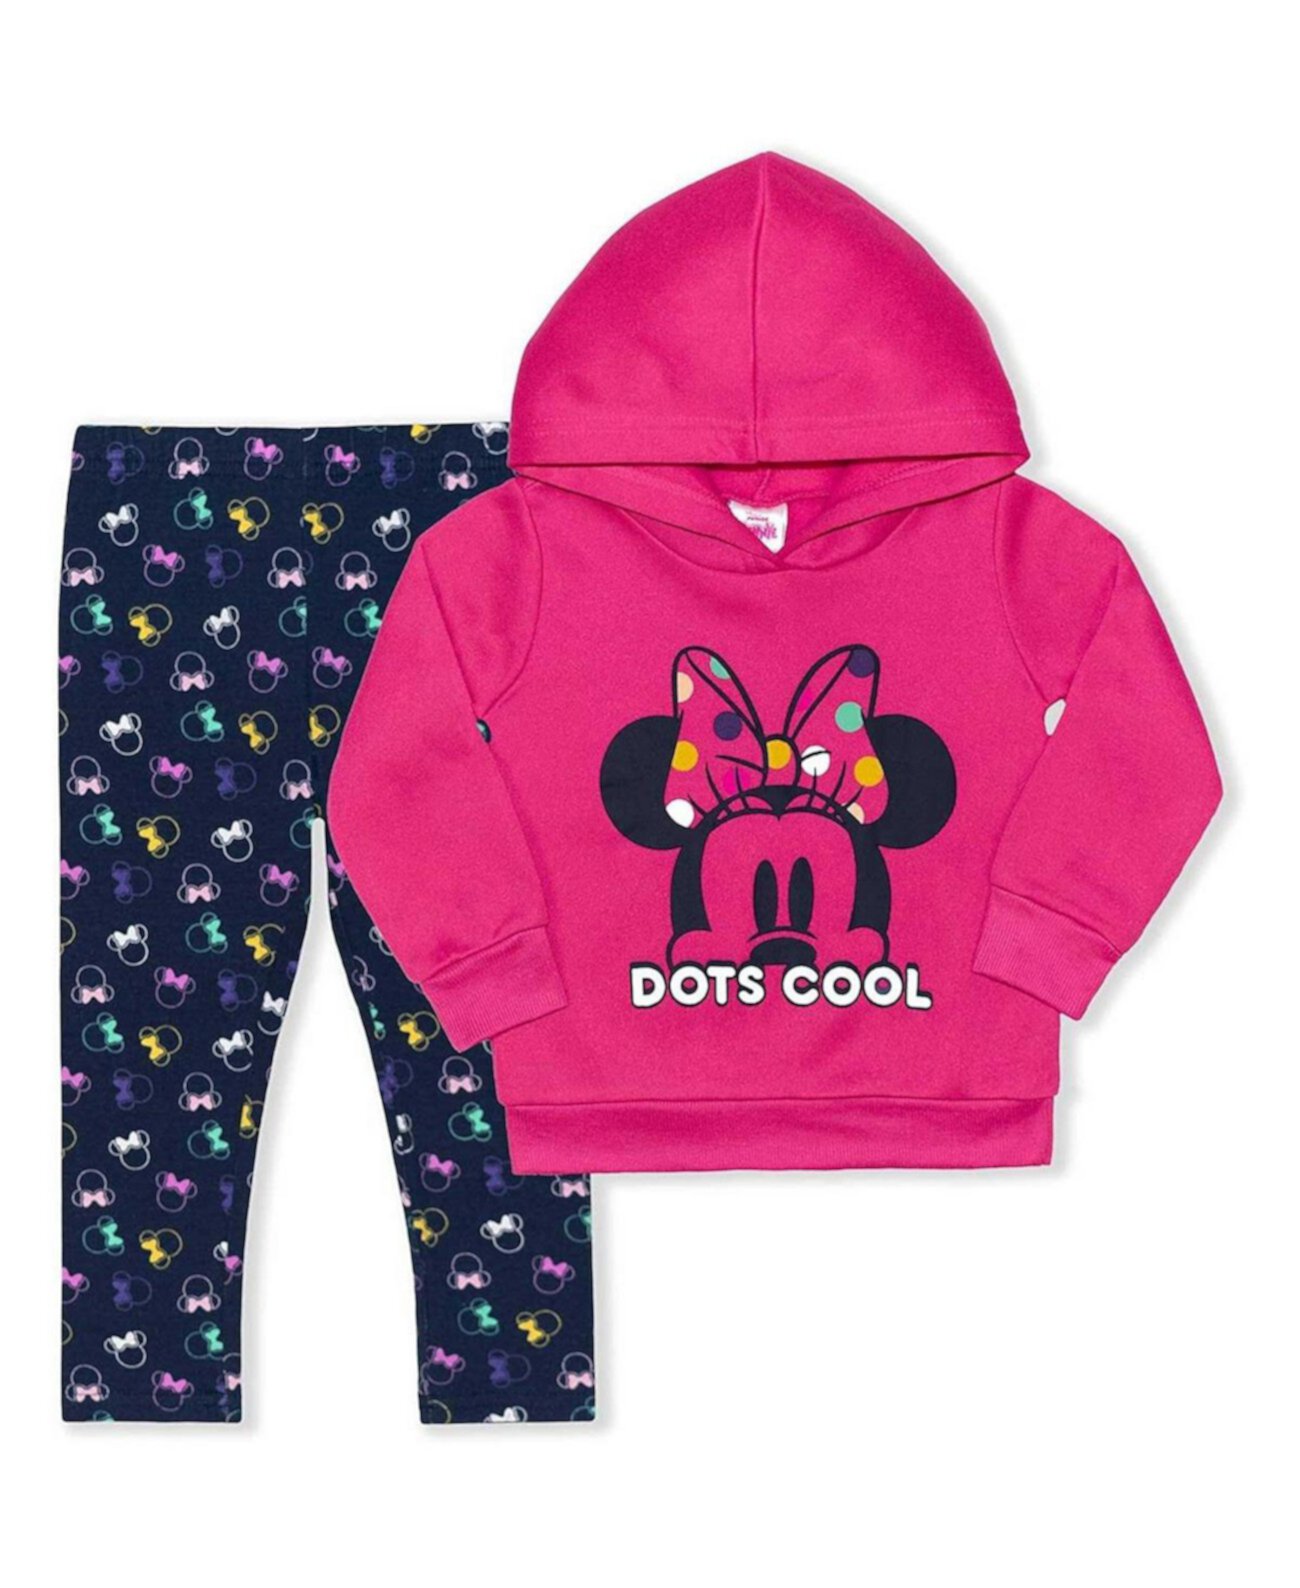 Комплект из розового и темно-синего пуловера с капюшоном и леггинсами для малышей Minnie Mouse Children's Apparel Network